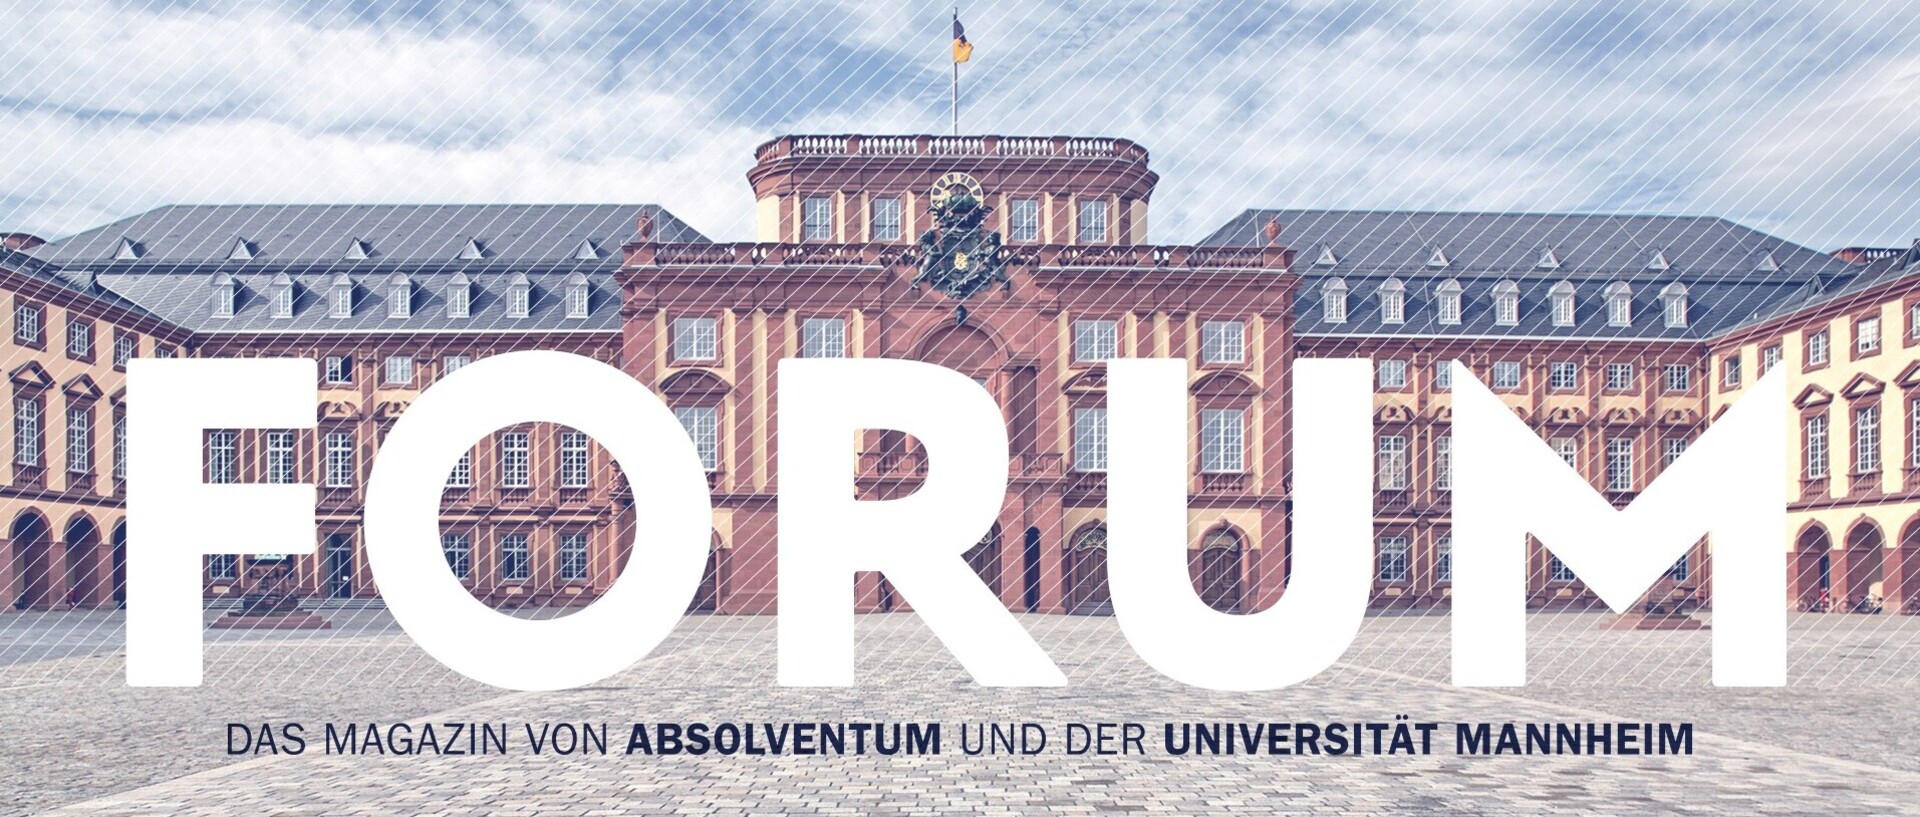 Bild des Ehrenhofs der Universität Mannheim mit der Aufschrift "FORUM. Das Magazin von Absolventum und der Universität Mannheim."